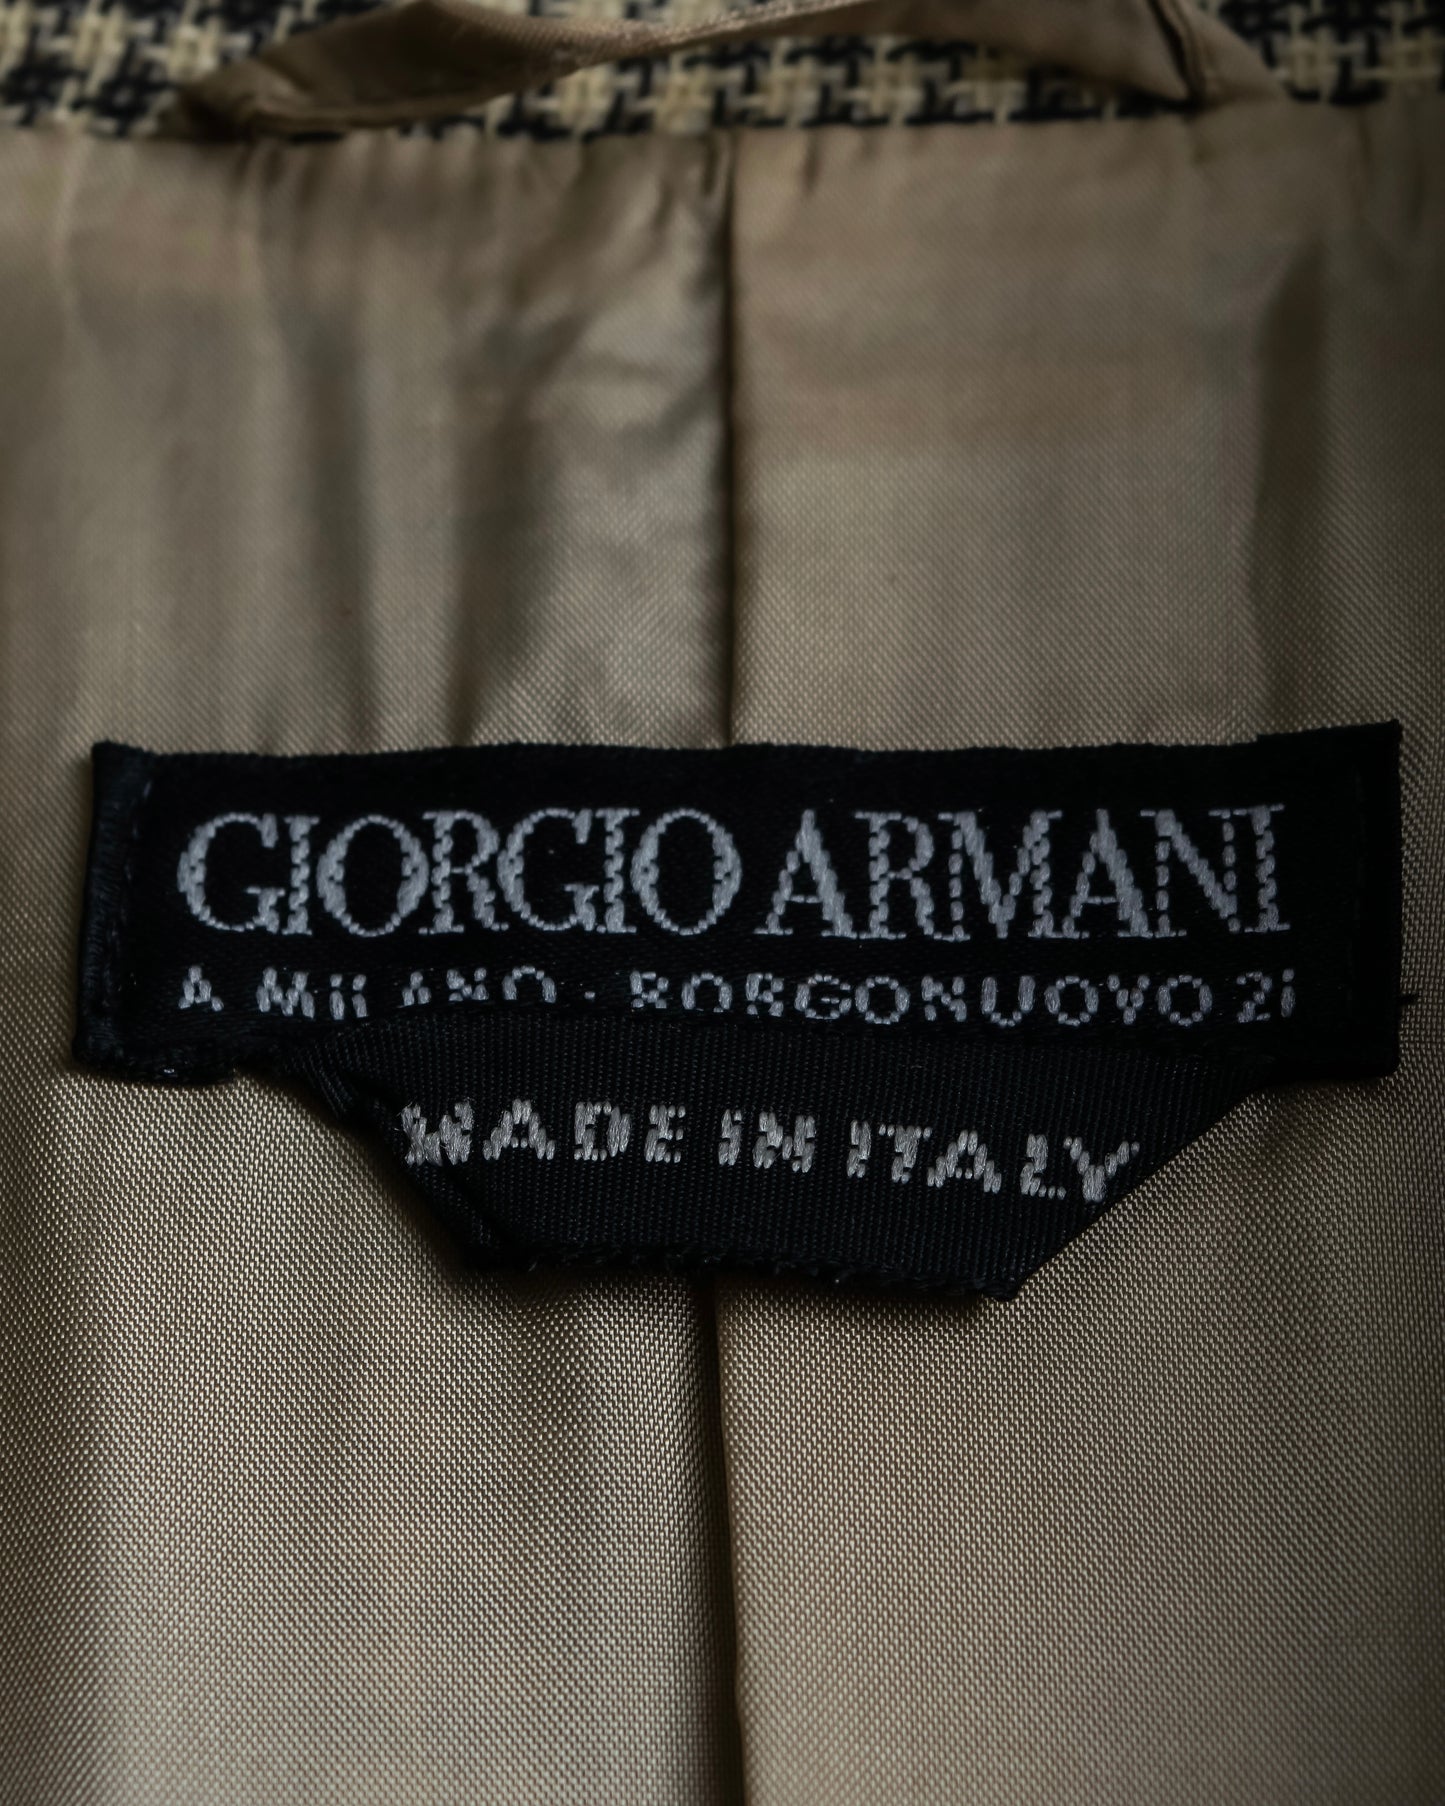 “GIORGIO ARMANI” check patented beautiful shape tailored jacket